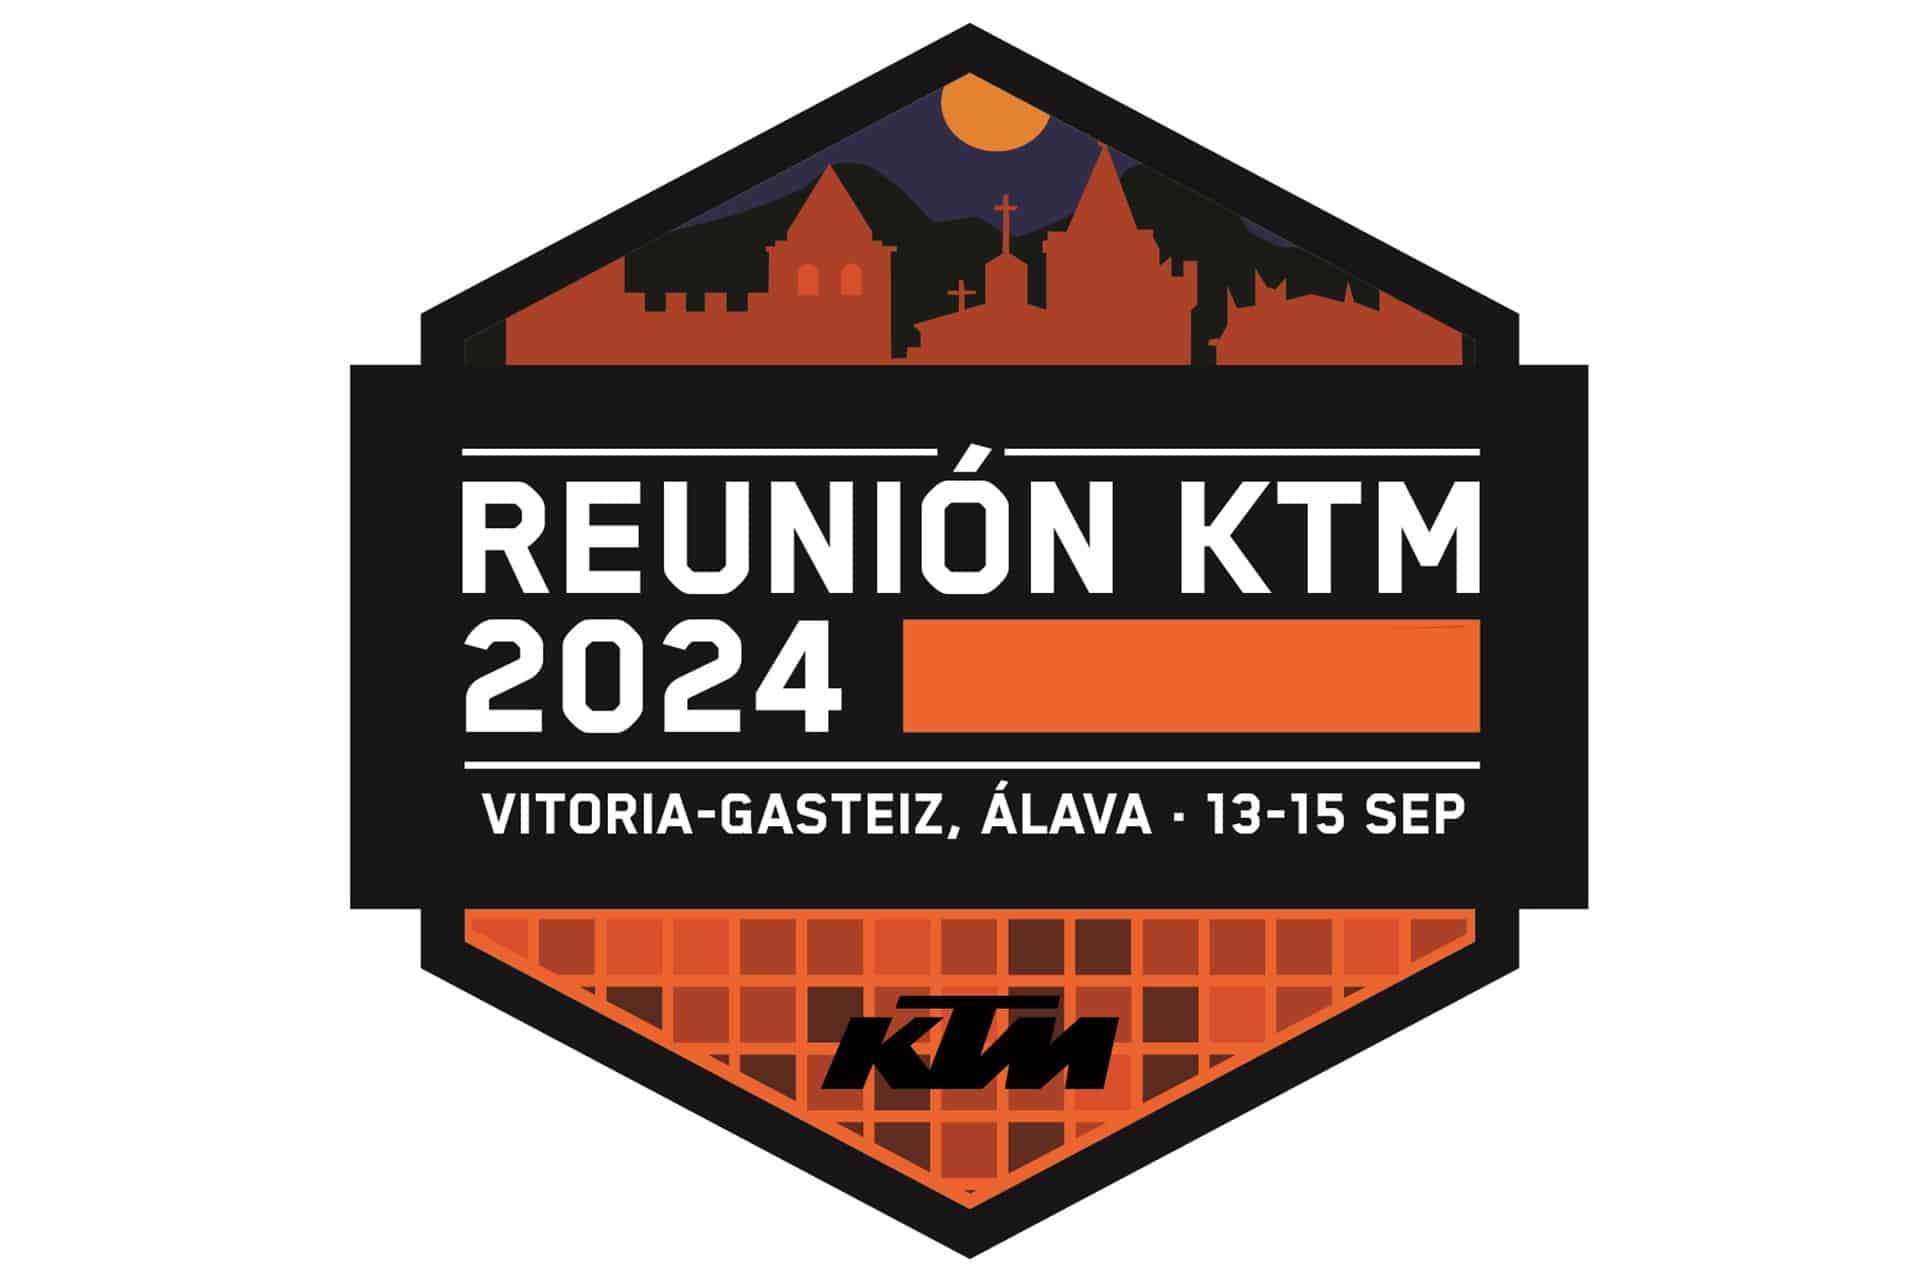 ¿Preparados para la Reunión KTM 2024? Os contamos todos los detalles